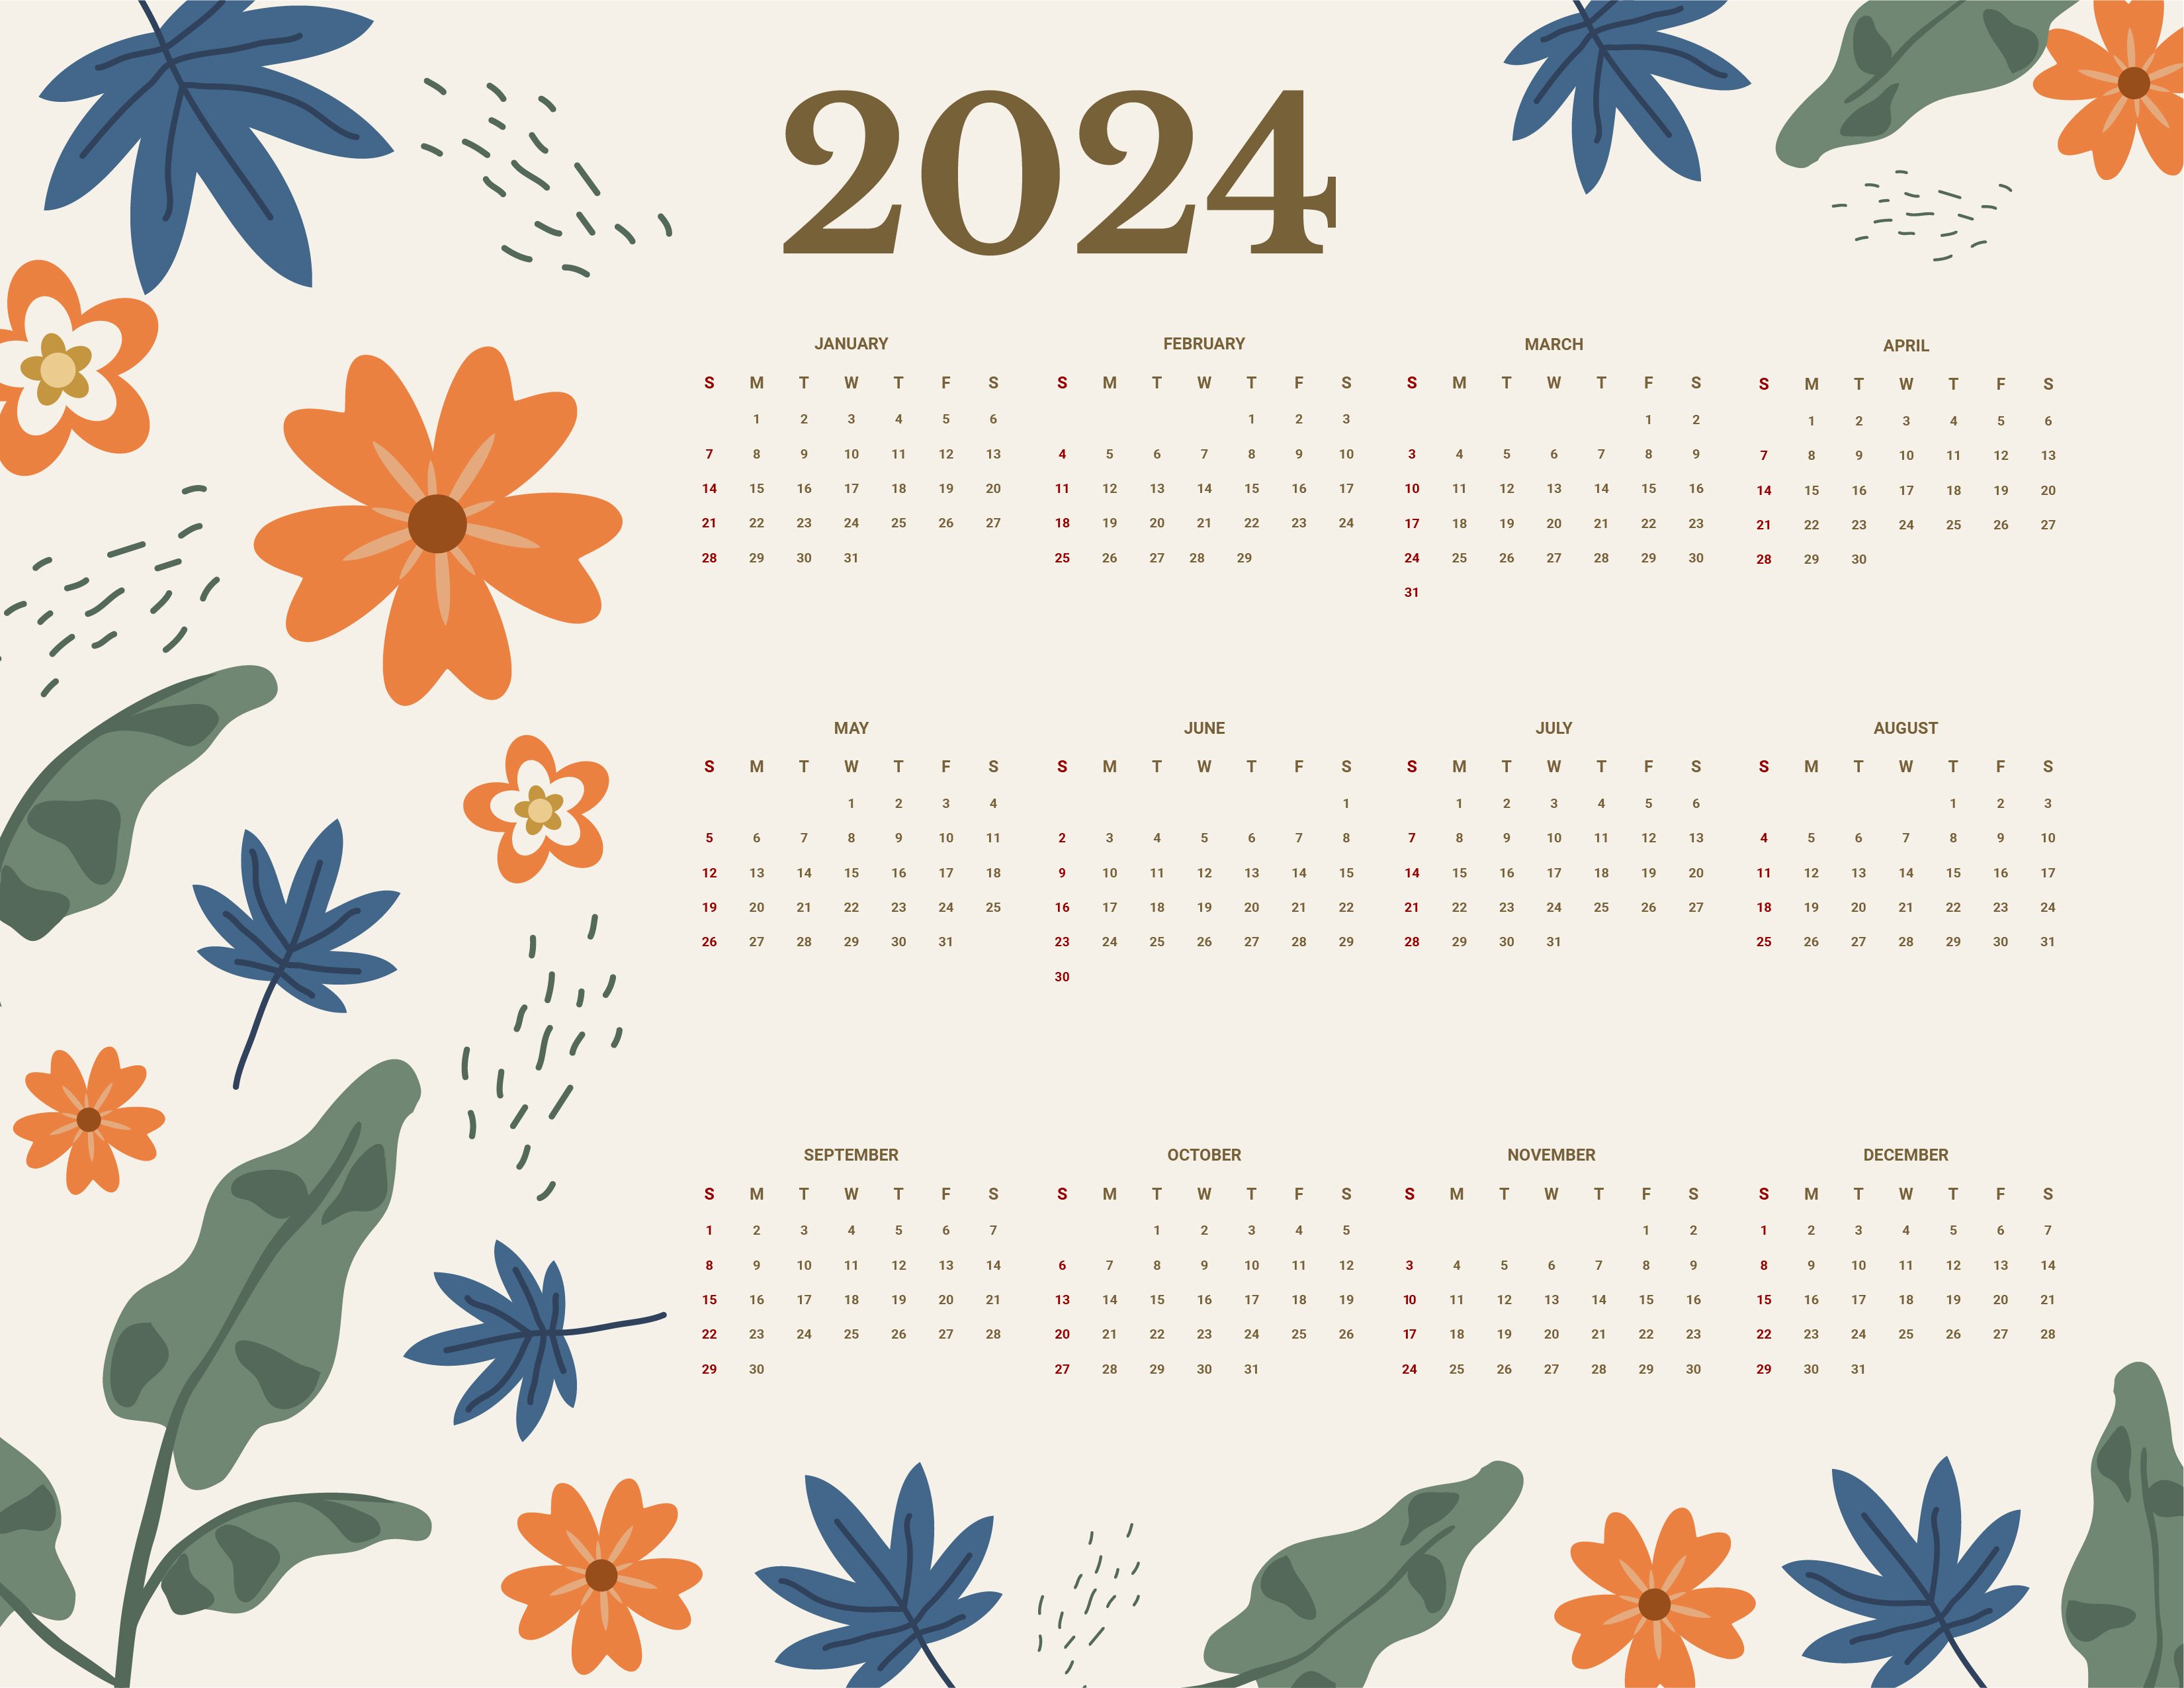 Floral Year 2024 Calendar in Google Docs, EPS, Illustrator, JPG, Word, SVG  - Download